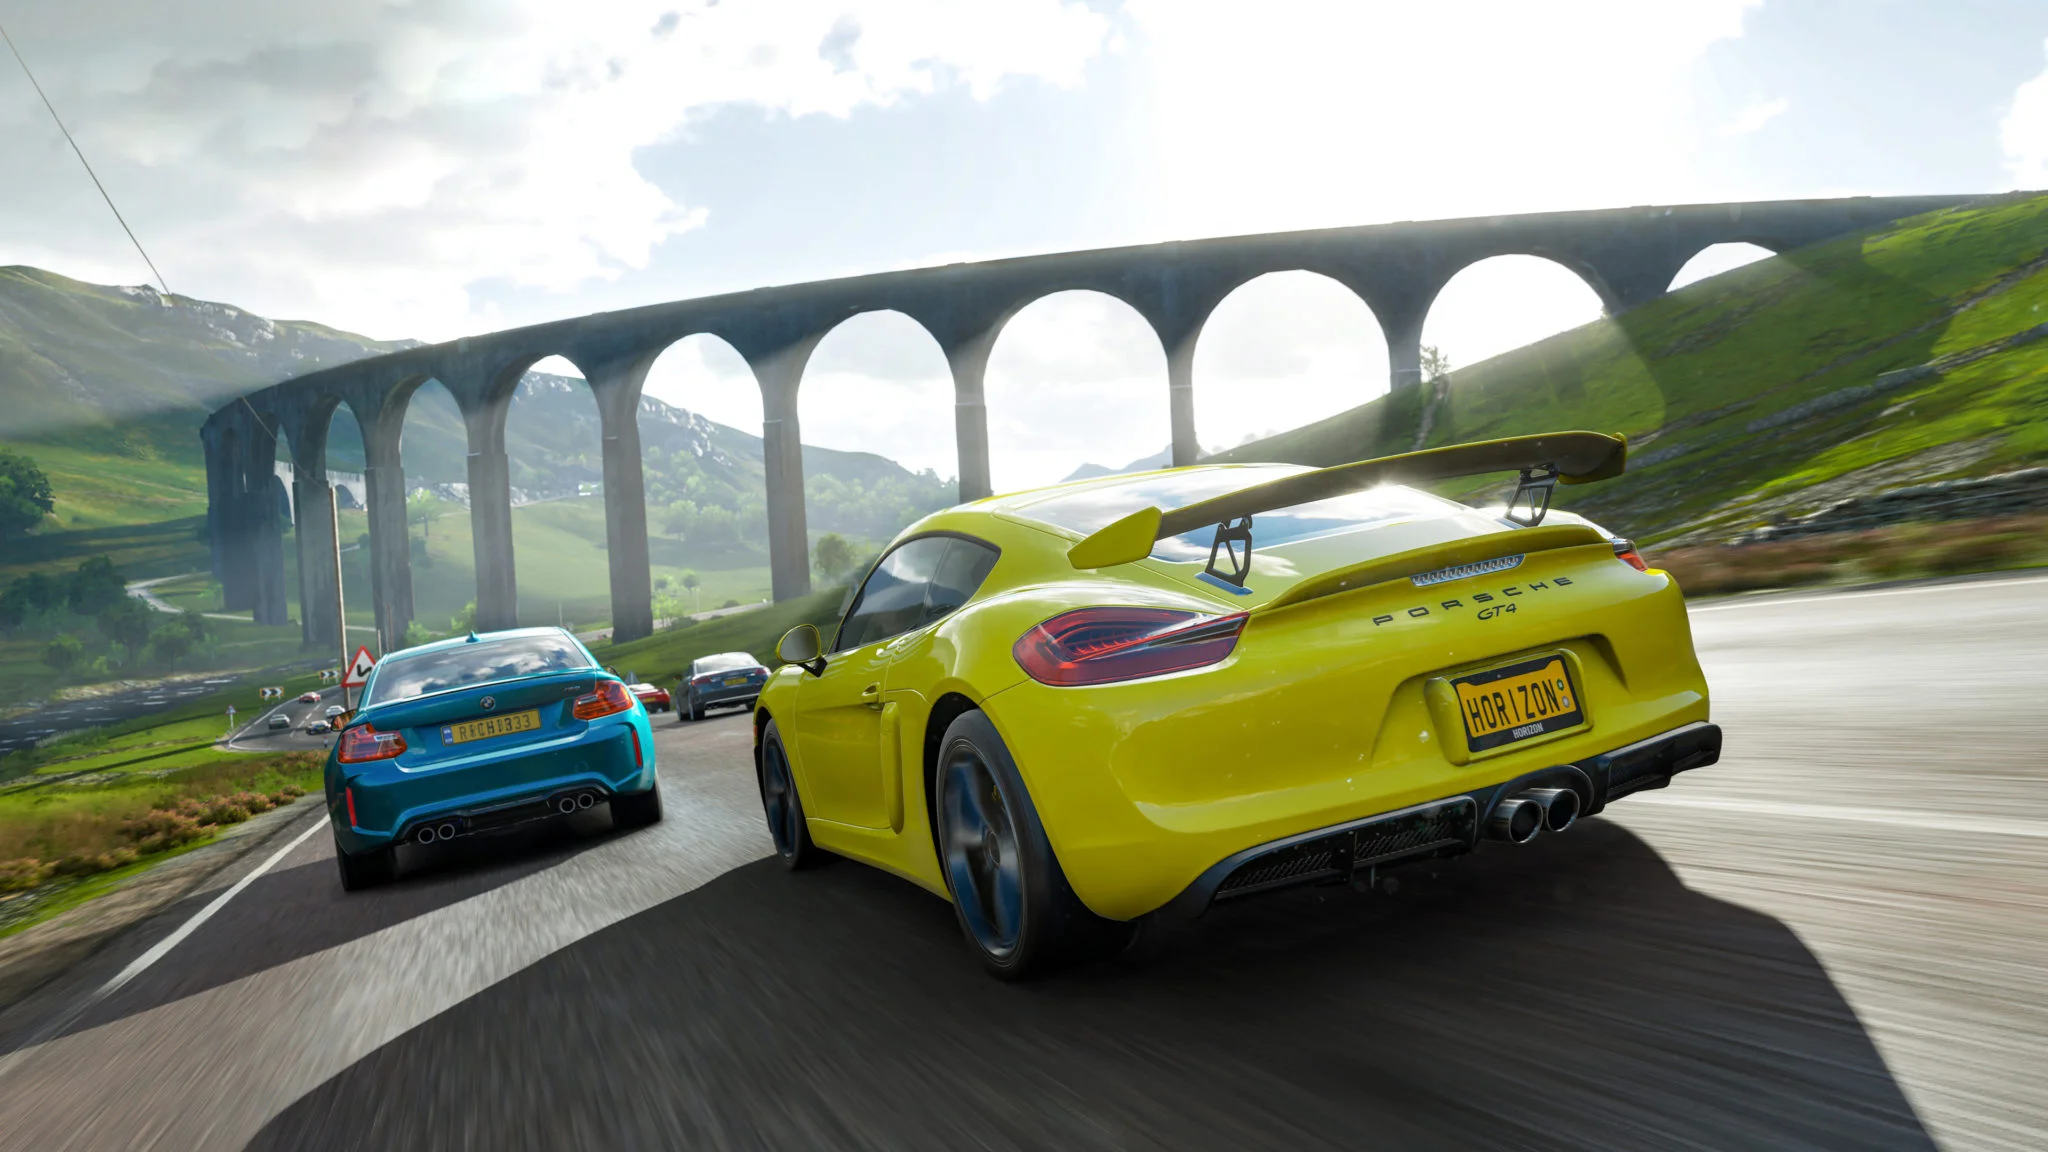 2 октября на PC и Xbox One выйдет Forza Horizon 4, которую мы уже успели назвать лучшей аркадной гонкой на сегодняшний день. Четвертый фестиваль Horizon пройдет в Великобритании, так что мы подготовили серию вопросов о гоночной (и не только) культуре Британии, о ее дорогах, географии и о самой Forza Horizon 4, конечно же. Вопросы получились не самые простые!